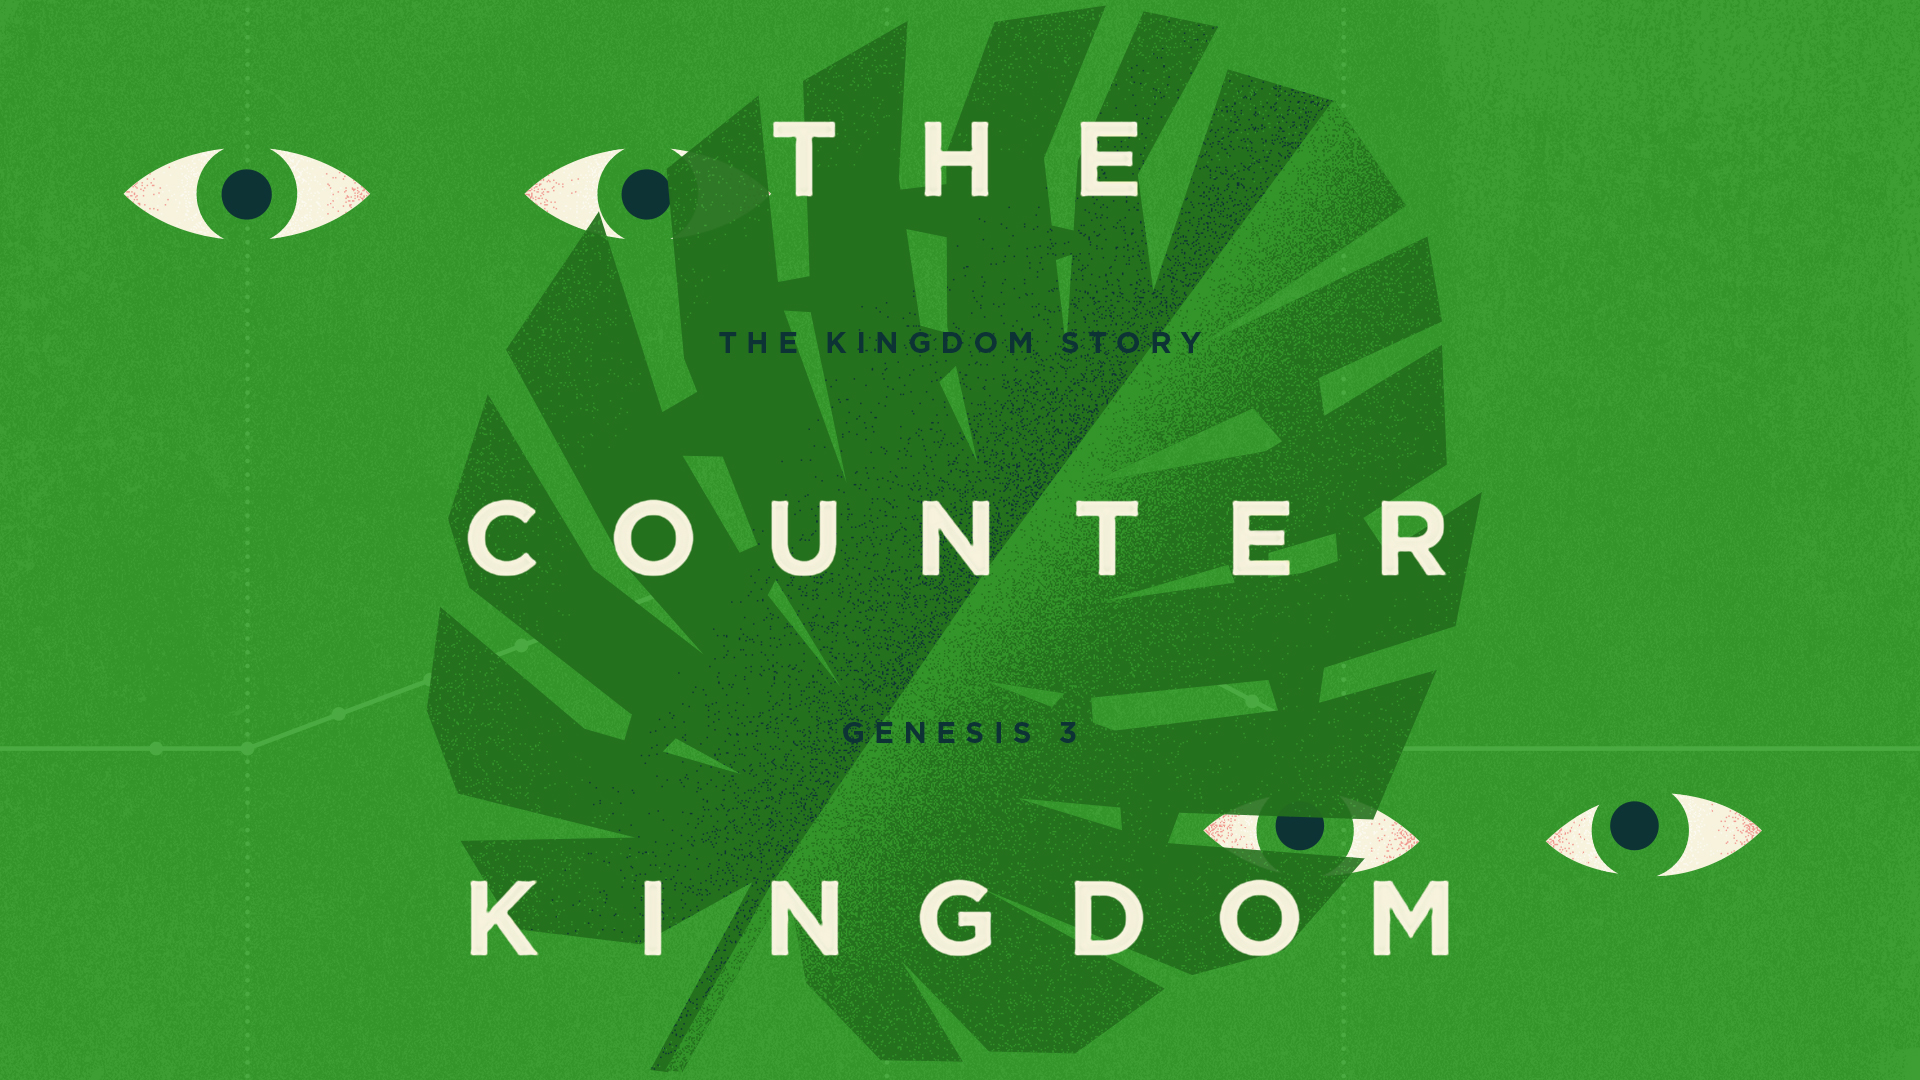 The Counter Kingdom